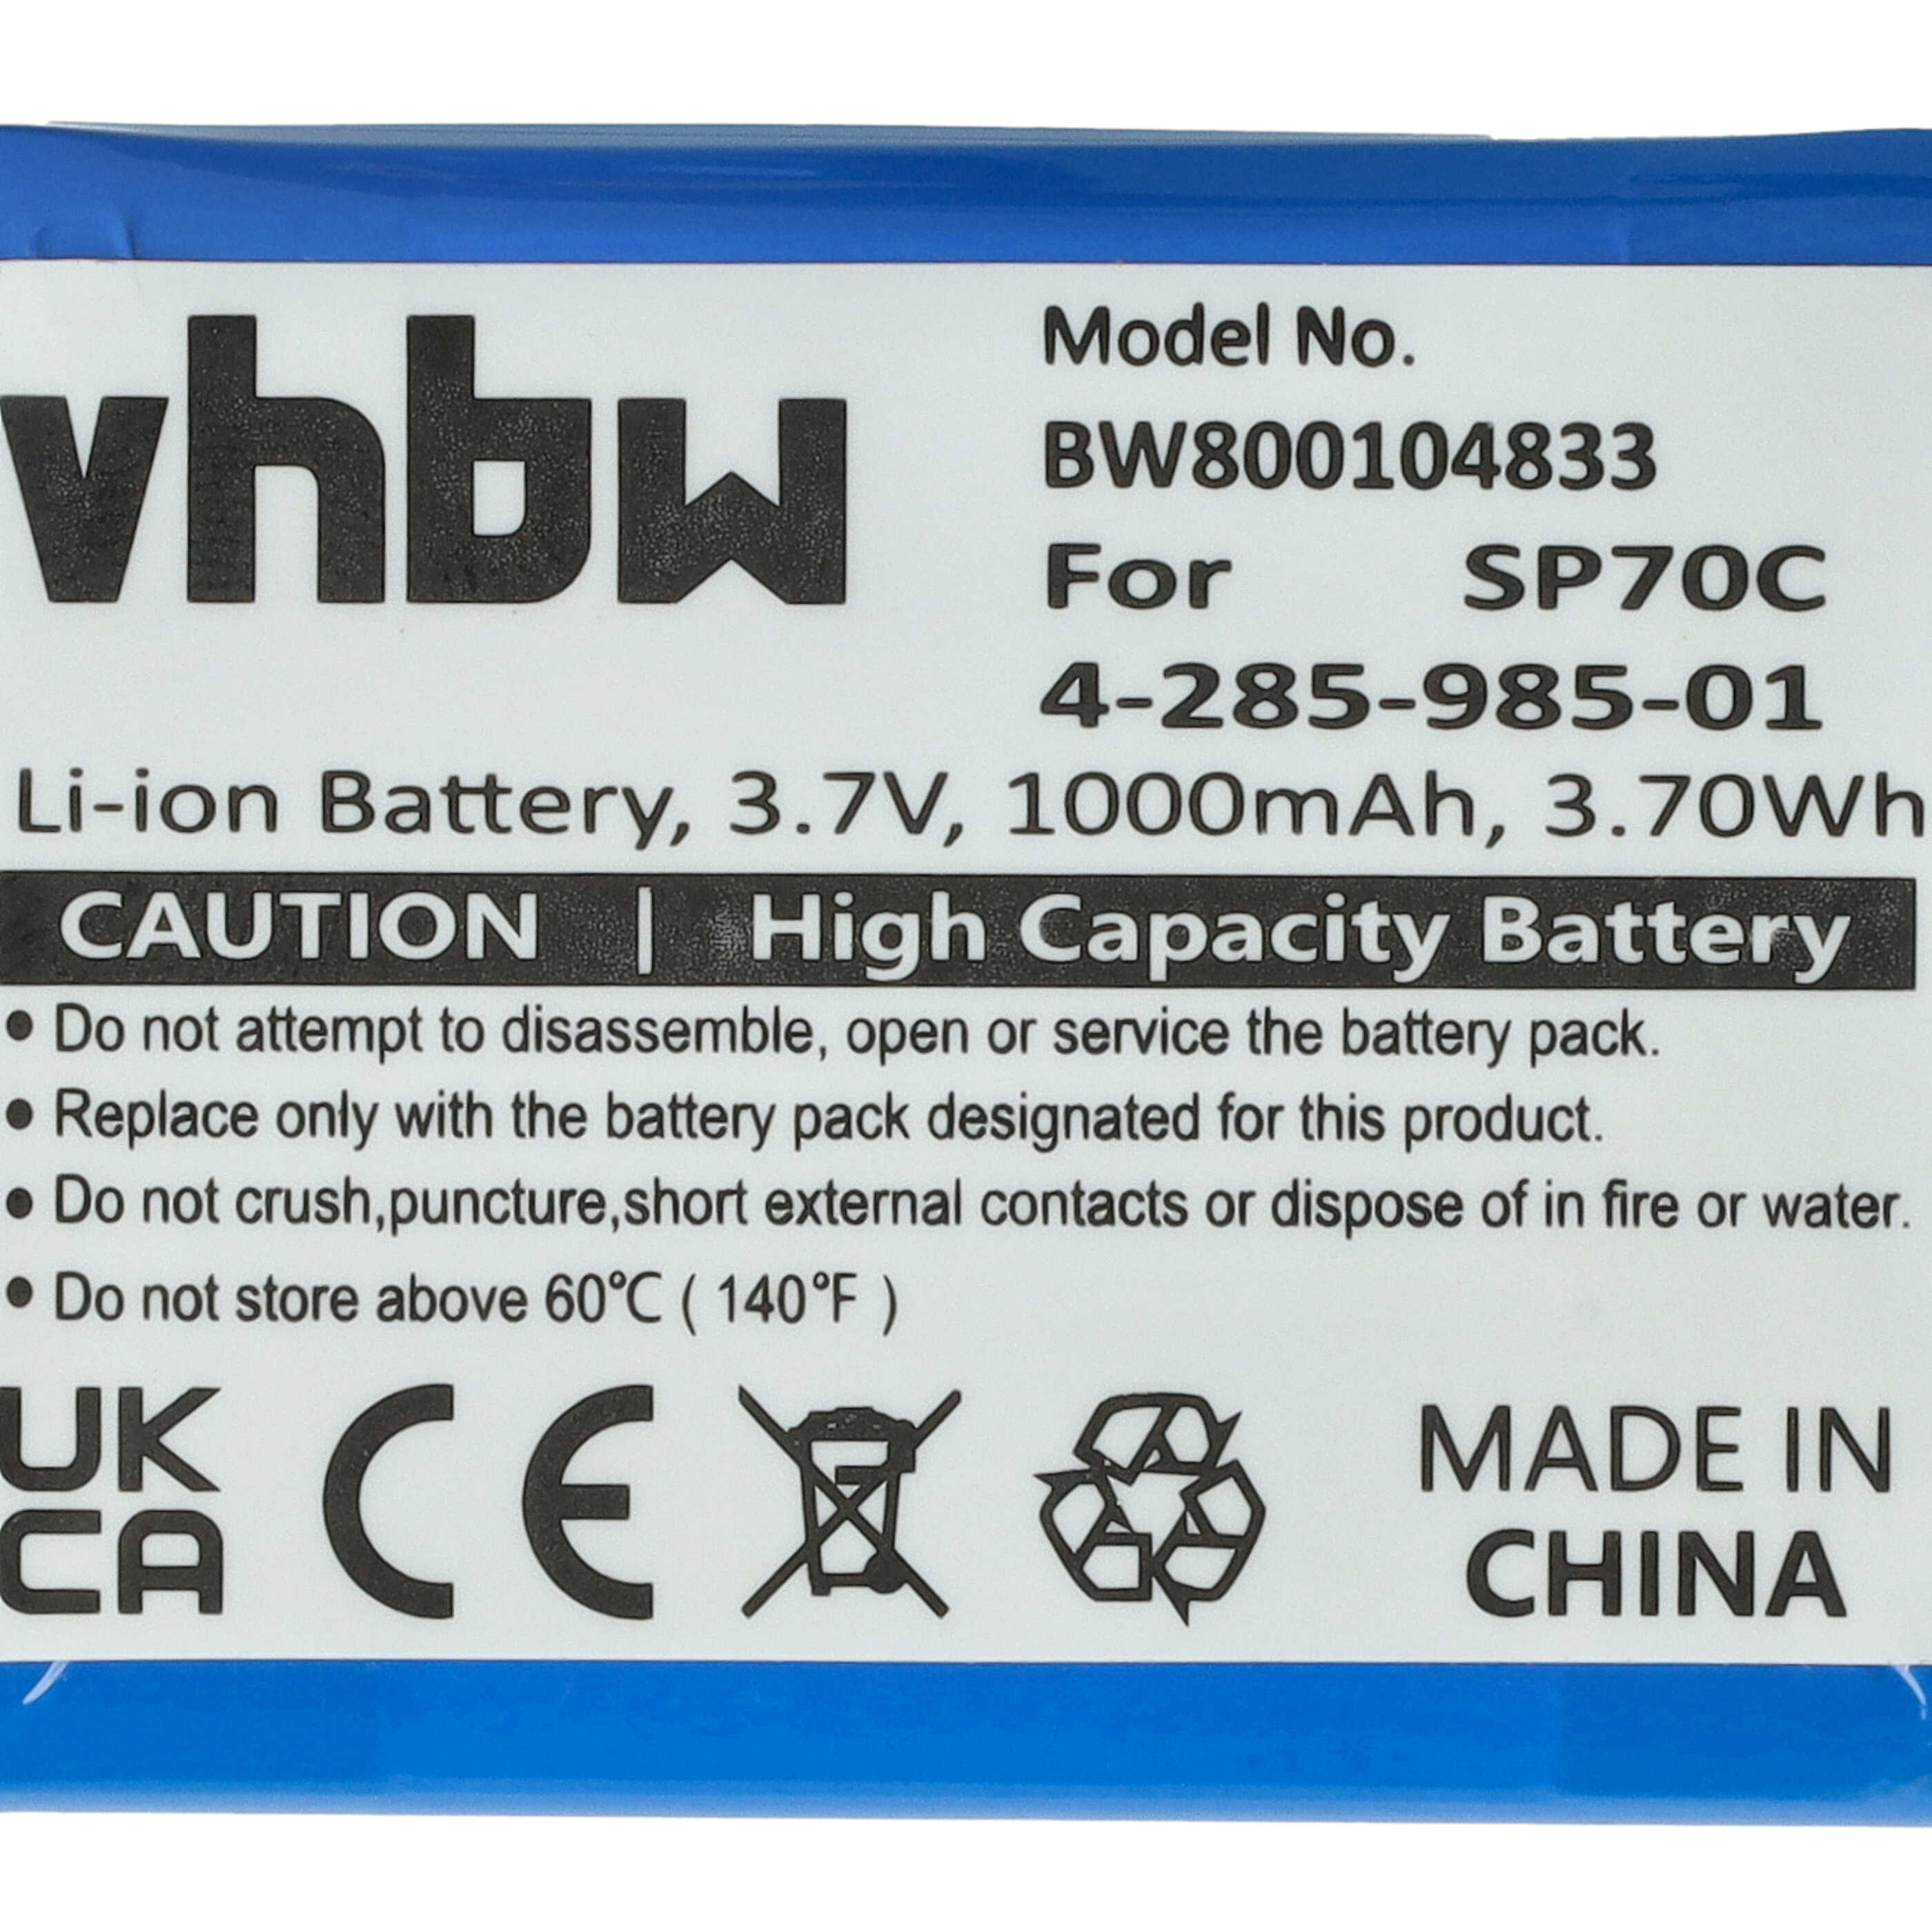 Batterie remplace Sony 4-285-985-01 remplace Sony 4-285-985-01 pour console de jeux - 1000mAh, 3,7V